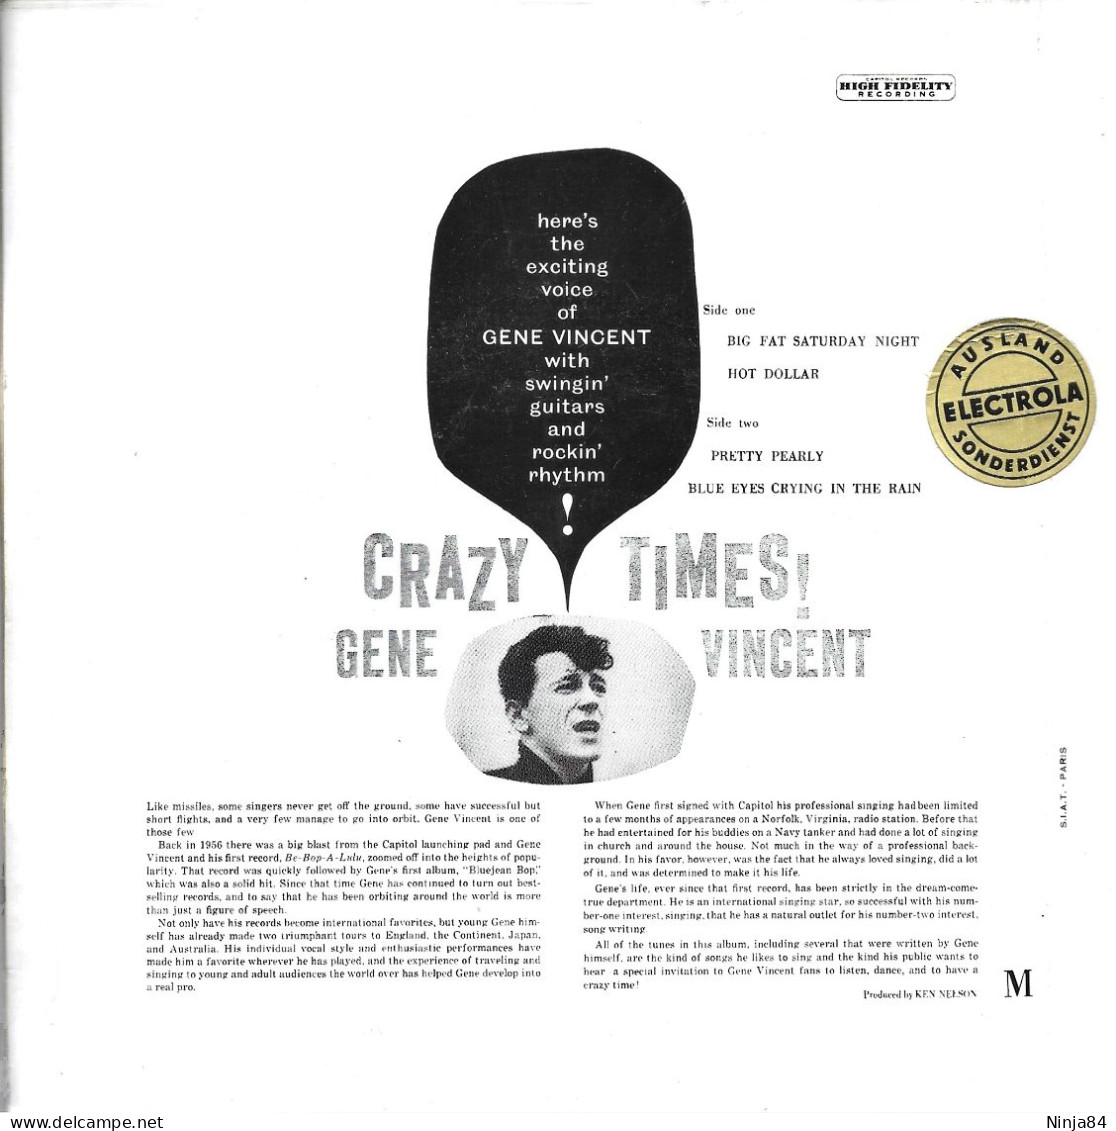 EP 45 RPM (7") Gene Vincent  "  Crazy Times !  " - Rock